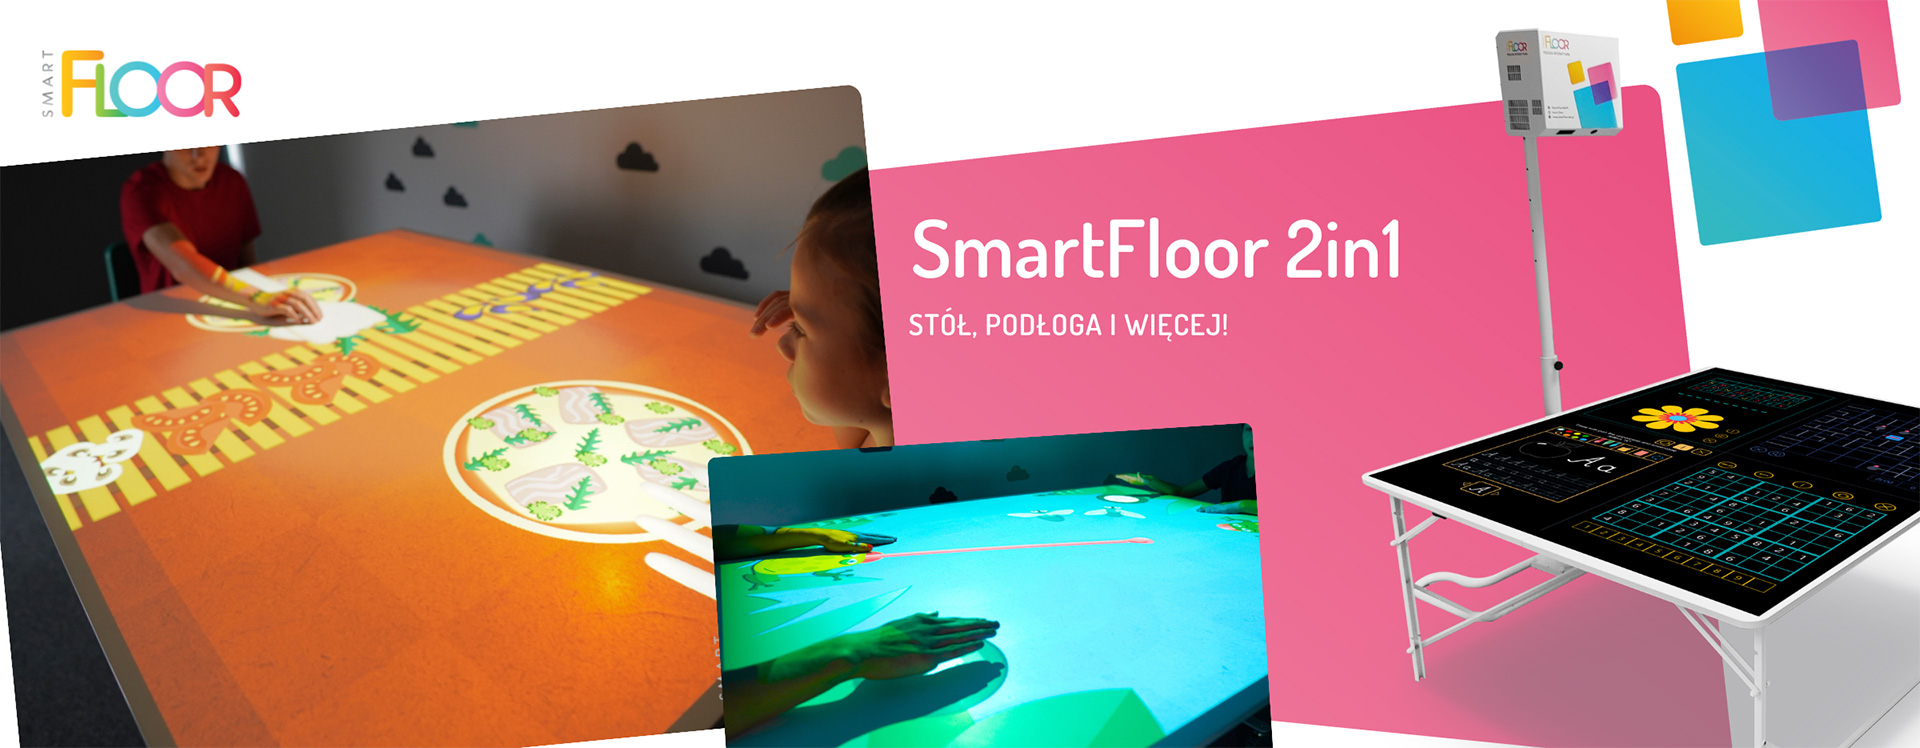 SmartFloor 2in1. Stół, podłoga i więcej.